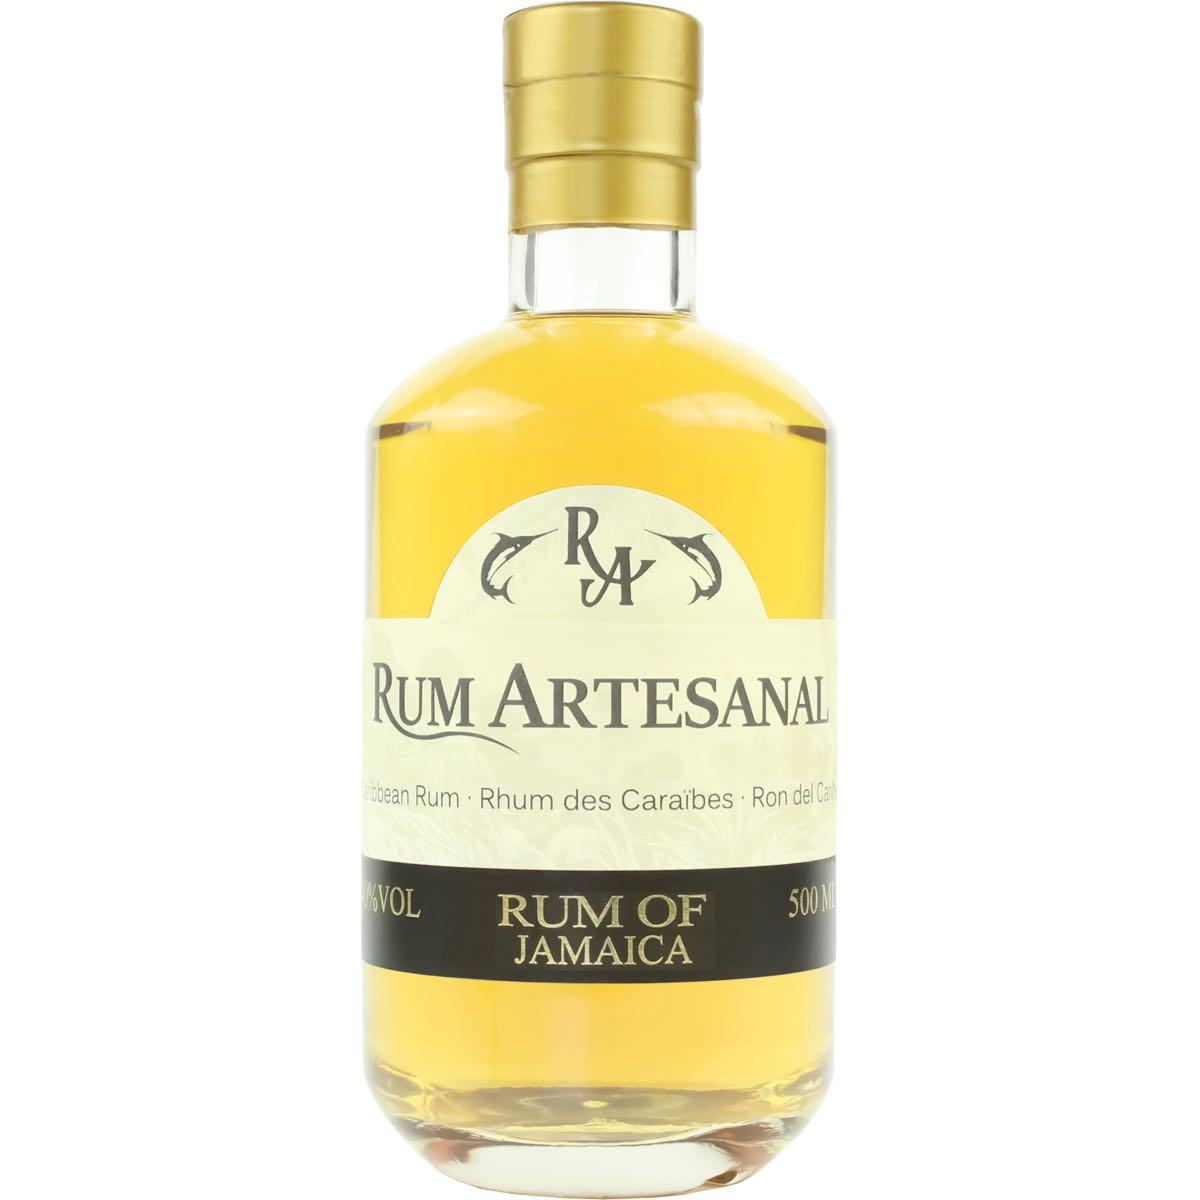 Bottle image of Rum Artesanal Rum of Jamaica